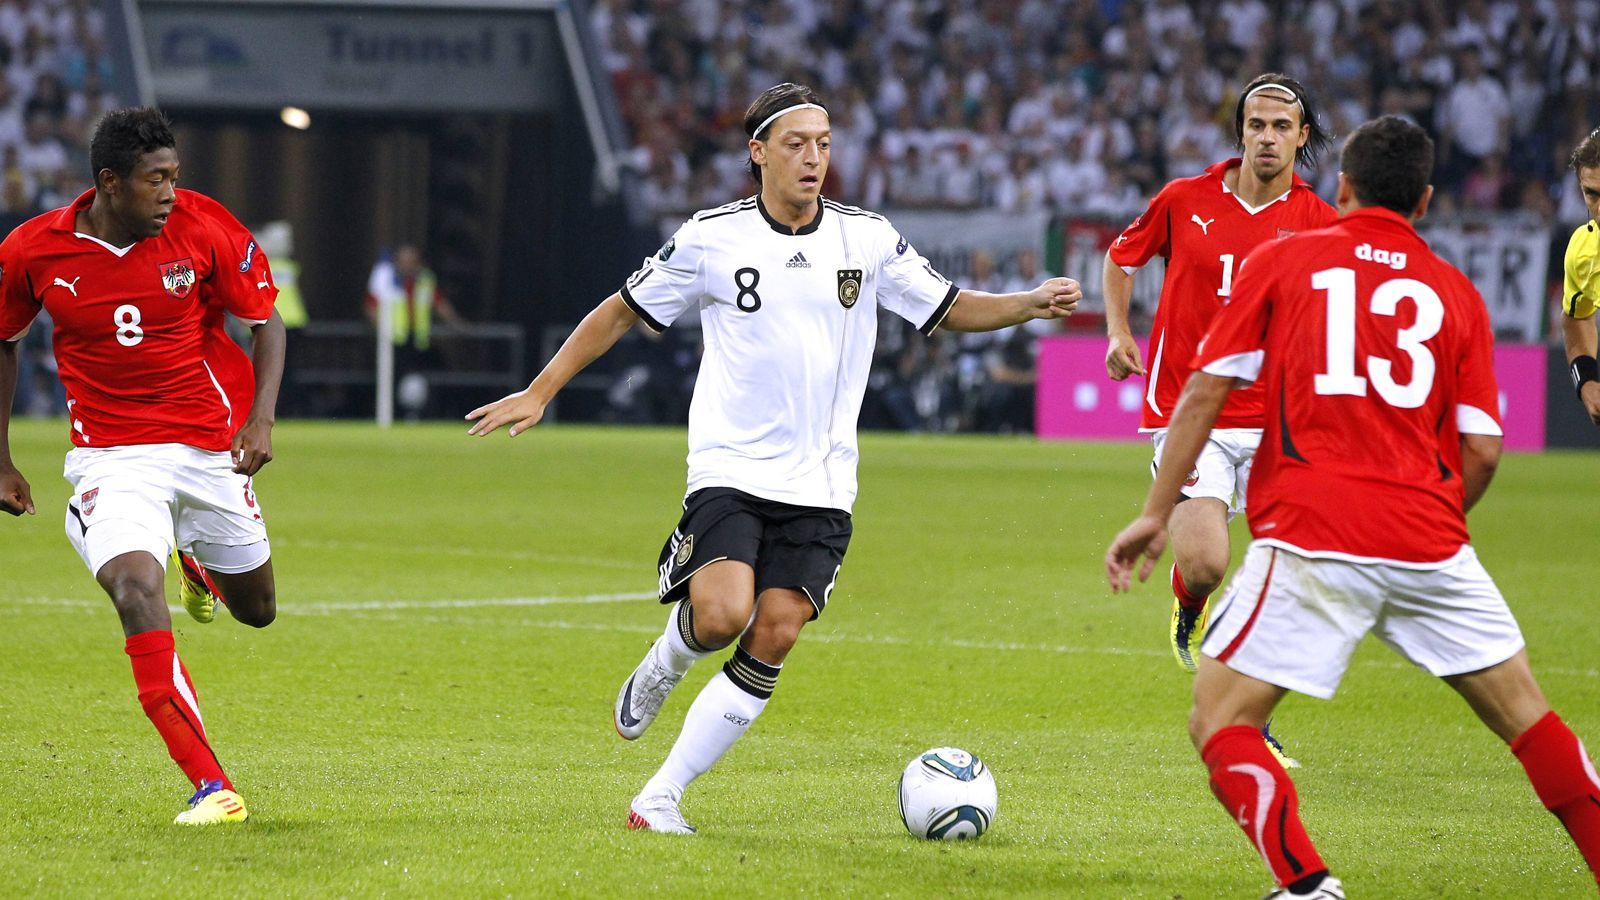 <strong>Deutschland siegt viermal in Folge</strong>
<br>In den Jahren darauf gab es reichlich Pflichtspiele zwischen den beiden Ländern, 2011 in der EM- und 2012/13 in der WM-Qualifikation trafen die beiden Länder aufeinander. Deutschland gewann alle vier Spiele, der höchste Sieg war ein 6:2 im September 2011 mit Doppeltorschütze Mesut Özil. Nun steht am Dienstag das 41. Duell der Nachbarn <a href="https://www.ran.de/sports/ticker/ma9865898/liveticker">(20.45 Uhr im Liveticker auf ran.de)</a> an. Wer wird diesmal gewinnen?
